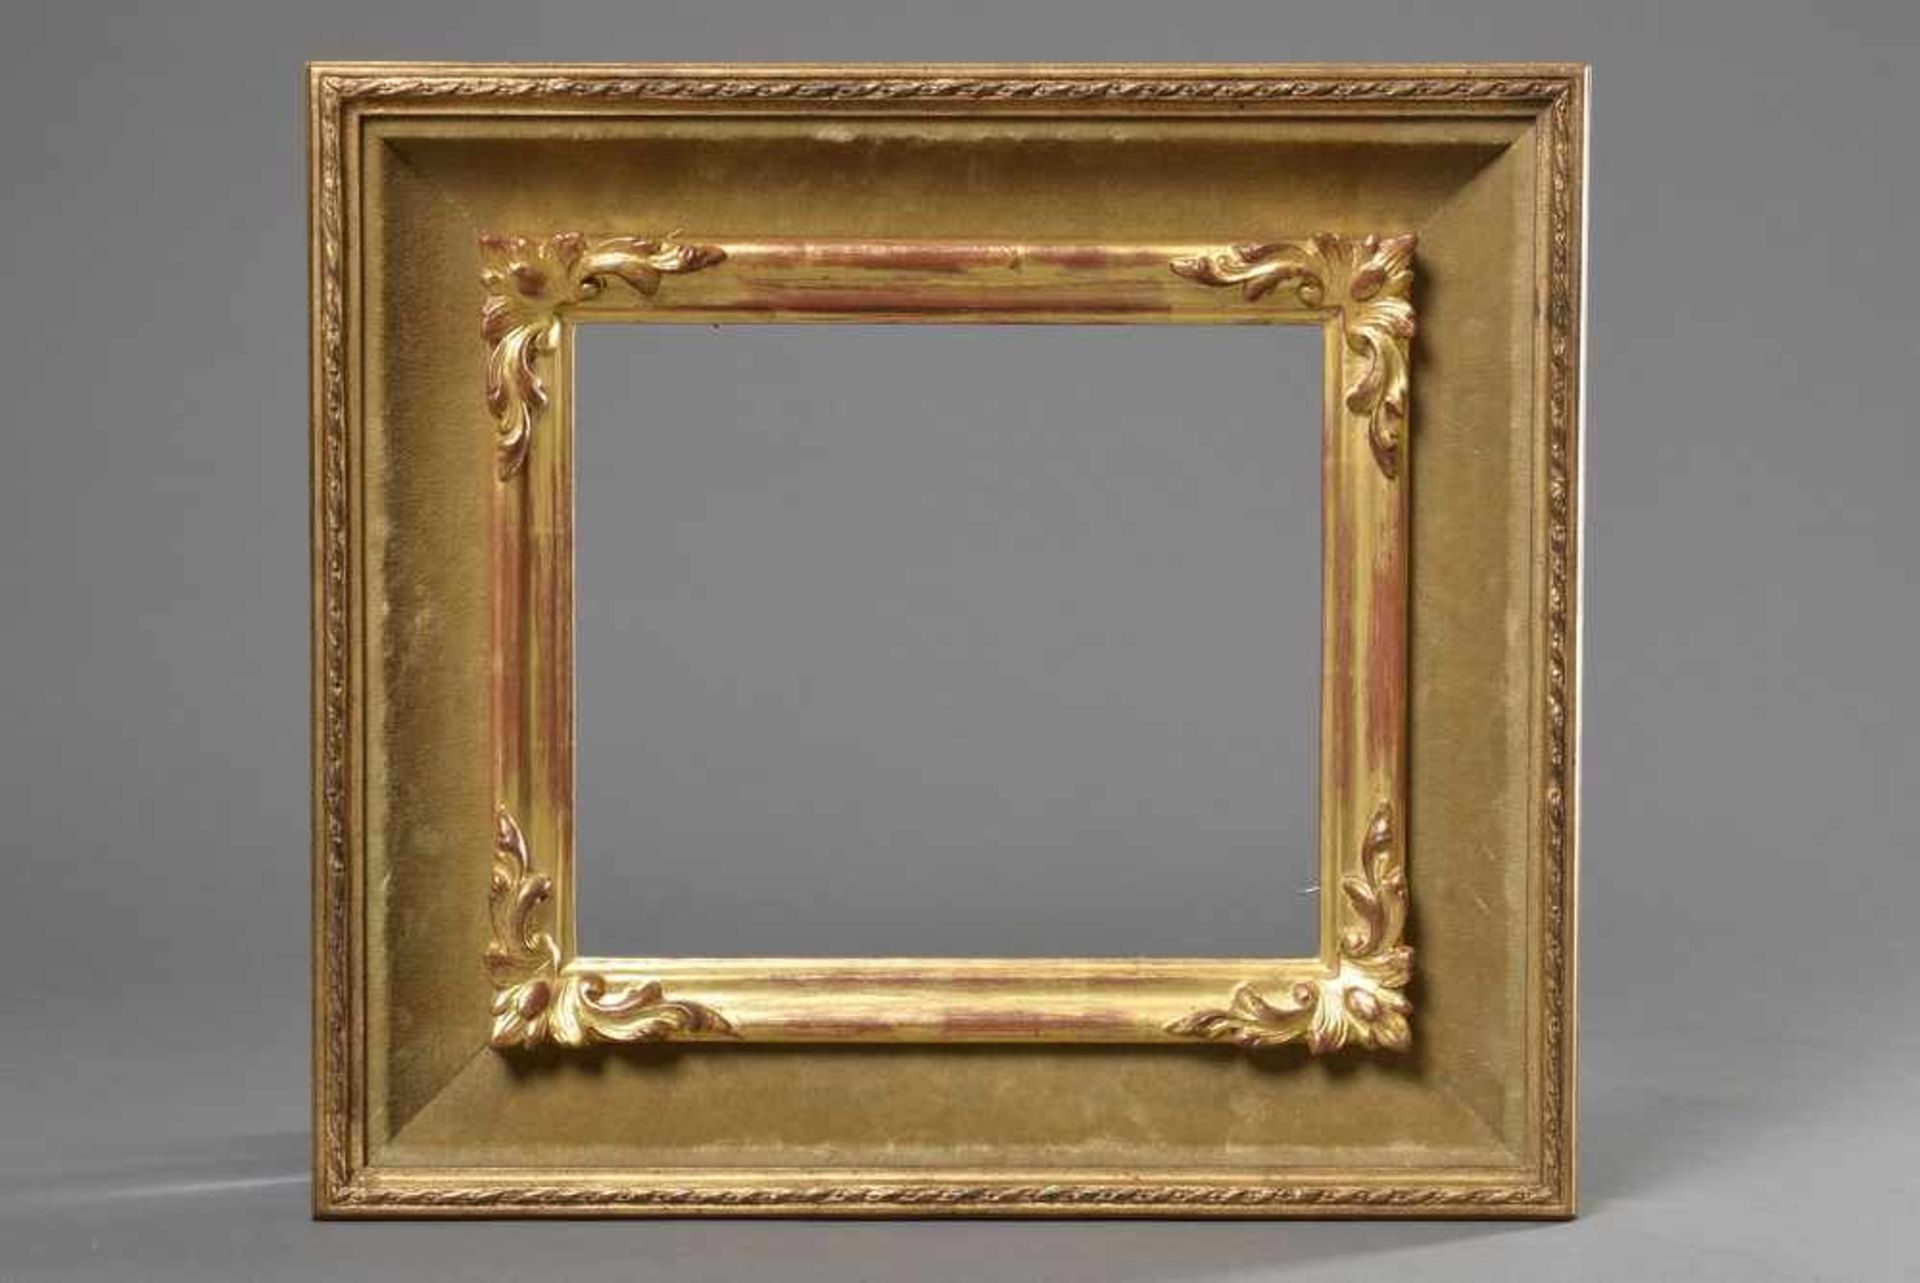 Vergoldeter Biedermeier Rahmen mit Samt Voute, 23,7x27,6/9cmGilded Biedermeier frame with velvet